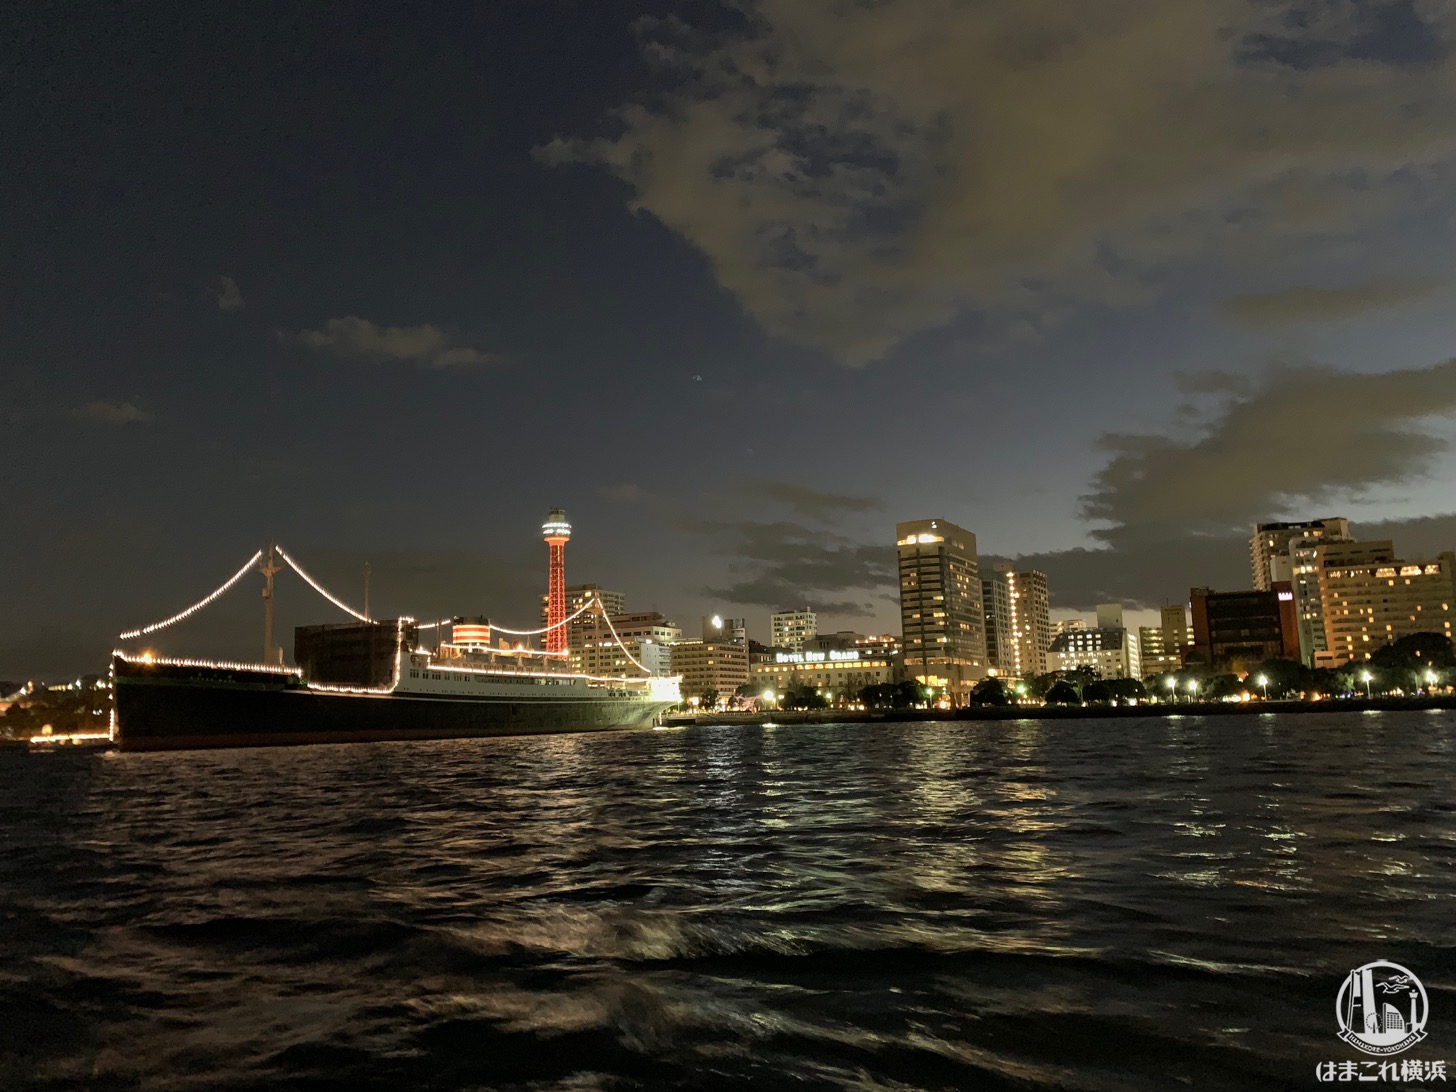 シーバスから見た日本郵船氷川丸と横浜マリンタワー